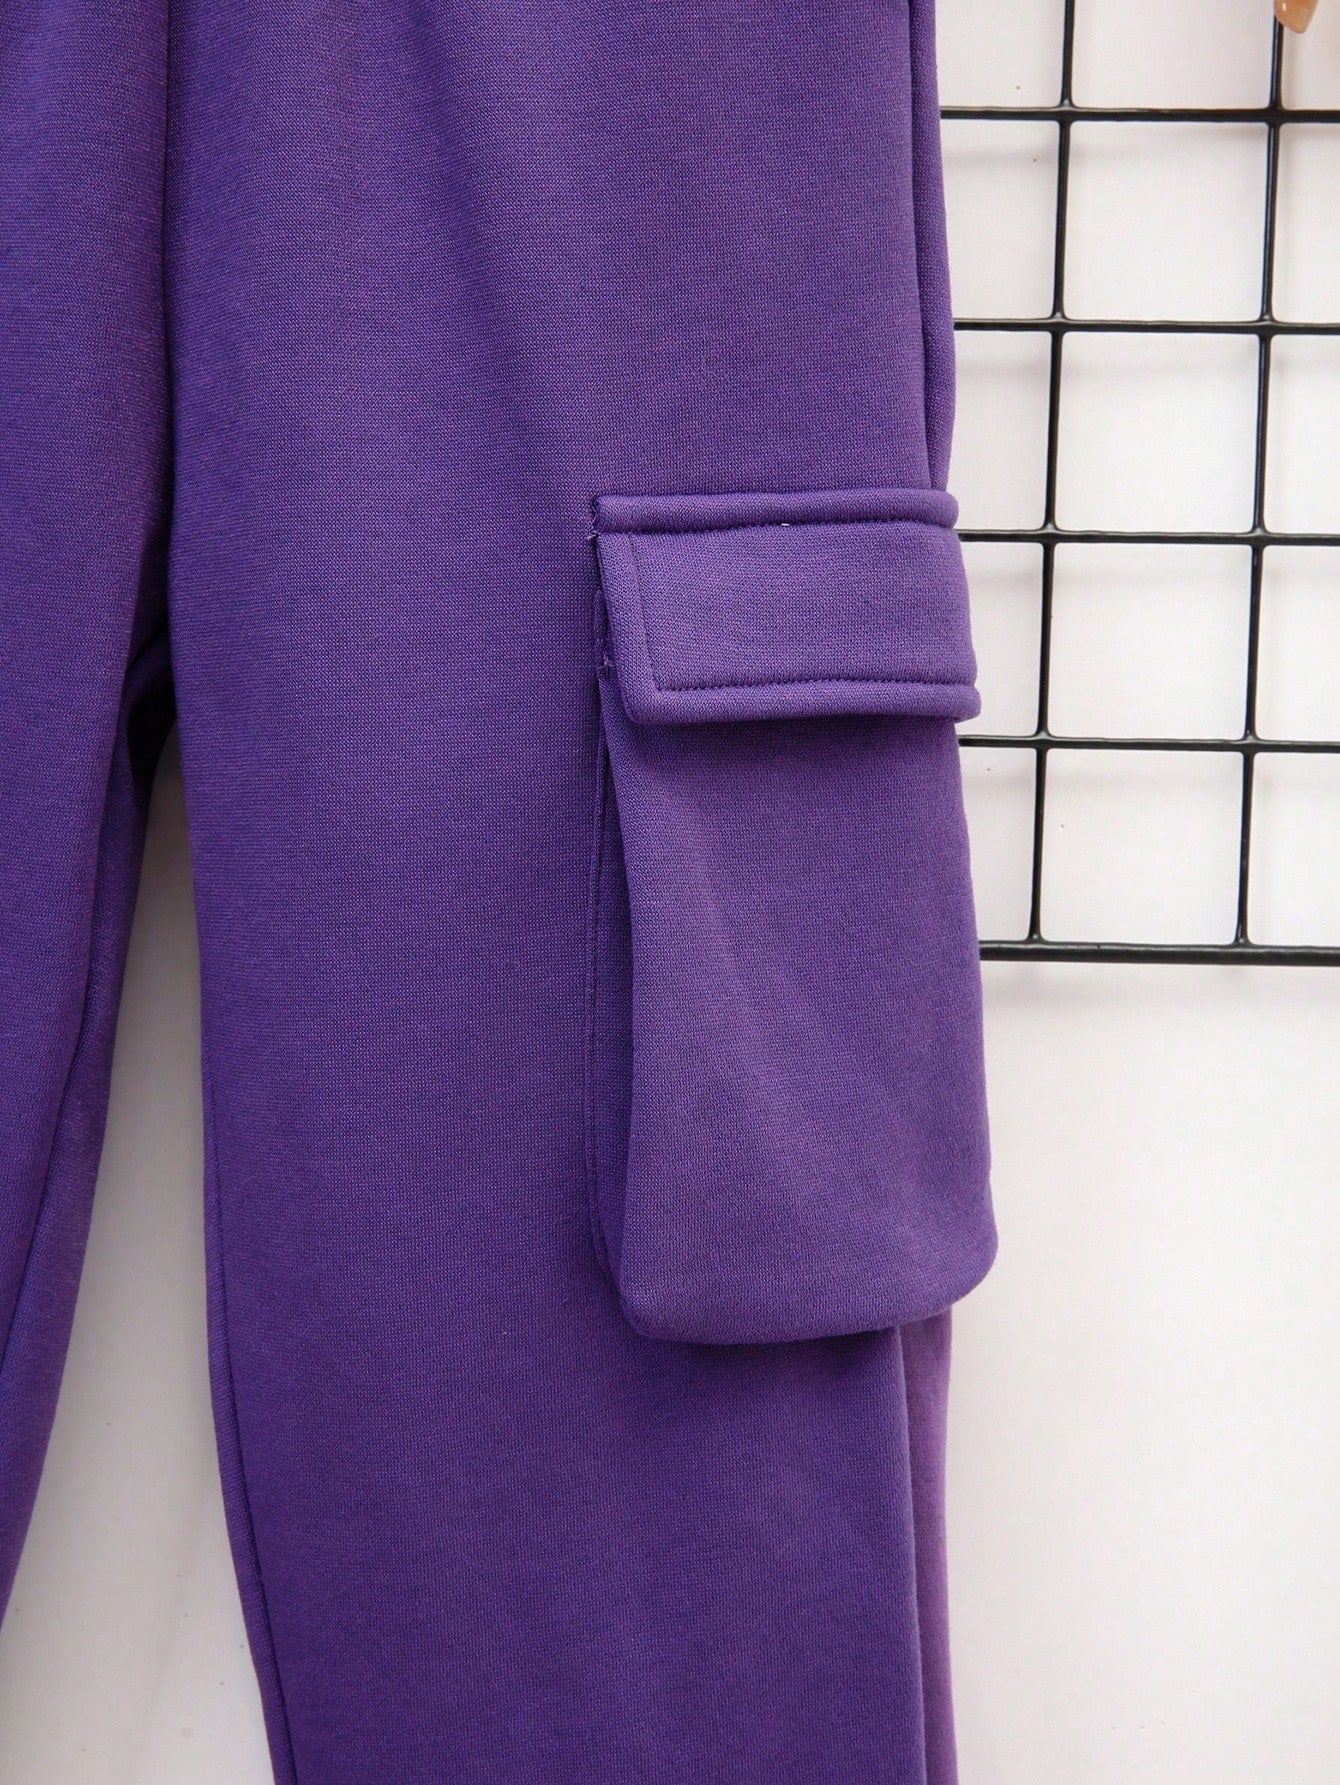 SHEIN Tween Boy Bear Print Thermal Hoodie & Flap Pocket Sweatpants & Bag